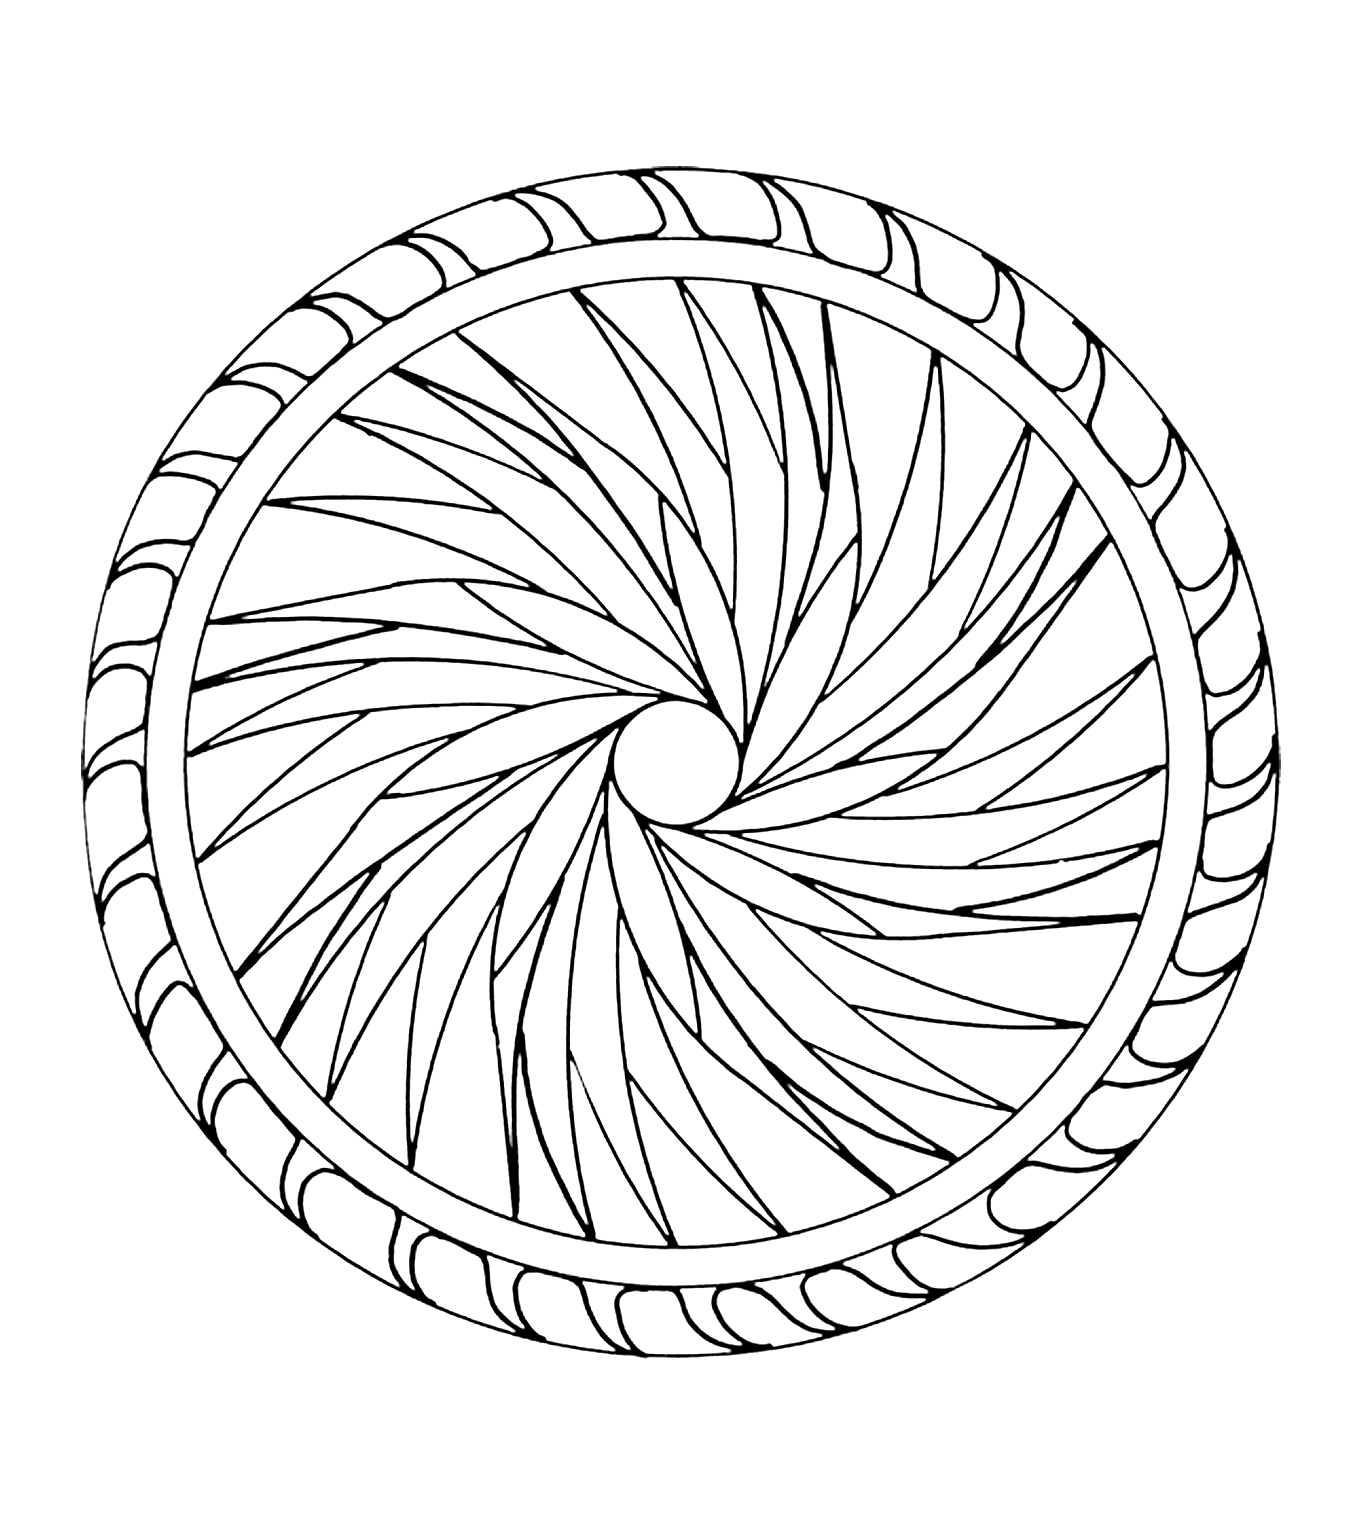 Ein abstraktes rundes Mandala, das einen Eindruck von Bewegung vermittelt. Ziemlich einfach, für Kinder.